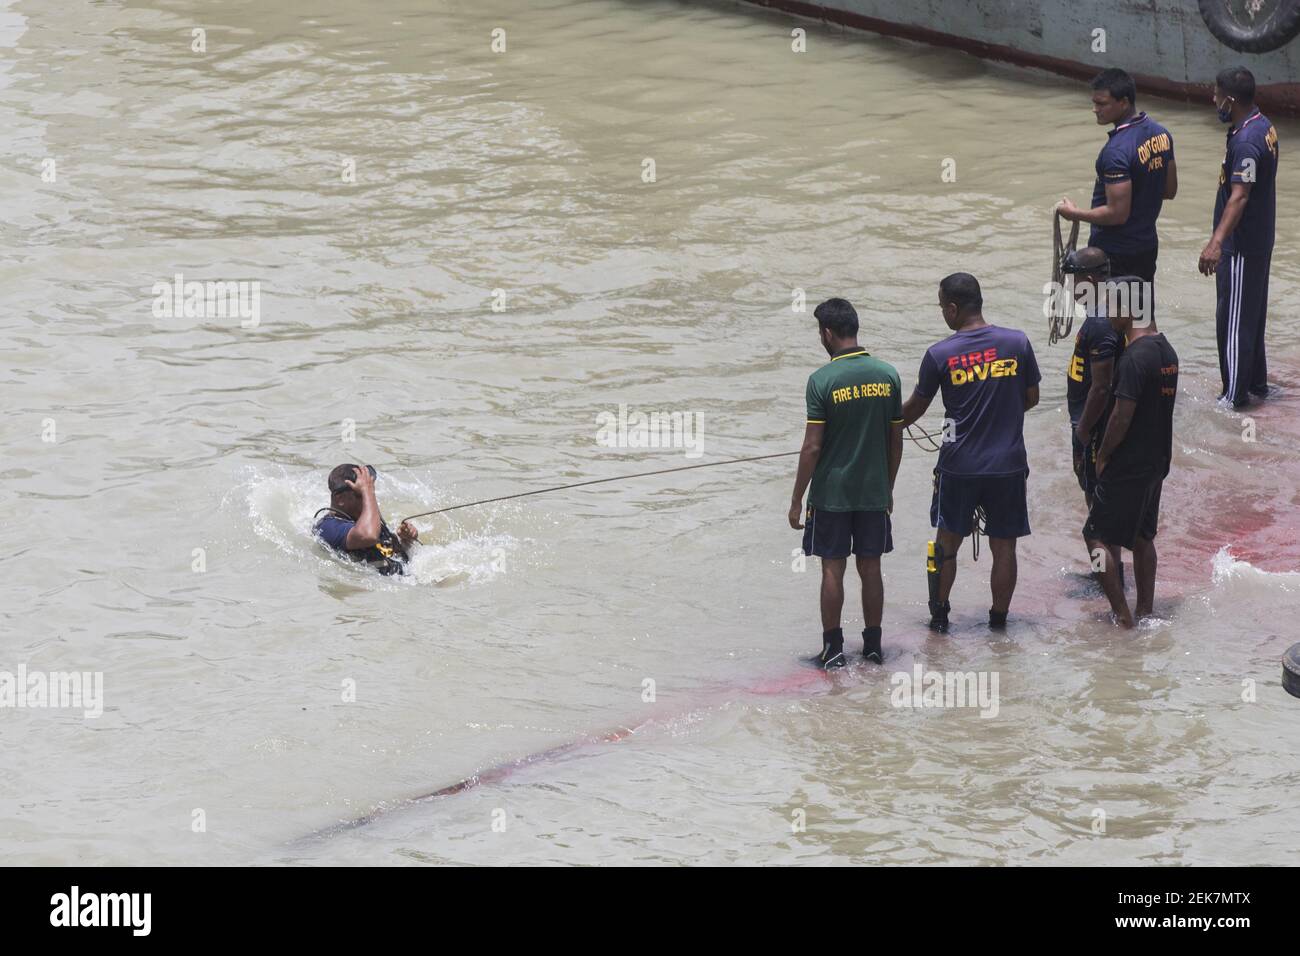 Un personale di soccorso si occupa di portare avanti i bagagli dell'ascensore il giorno dopo un traghetto sborsato nel fiume Buriganga a Dhaka il 30 giugno 2020. Almeno 32 persone sono morte dopo un traghetto sprofondato e affondato nel mezzo del fiume Buriganga il 29 giugno, a seguito di una collisione con un altro nome di traghetto, Mayur-2. (Foto di Salahuddin Ahmed/Sipa USA) Foto Stock